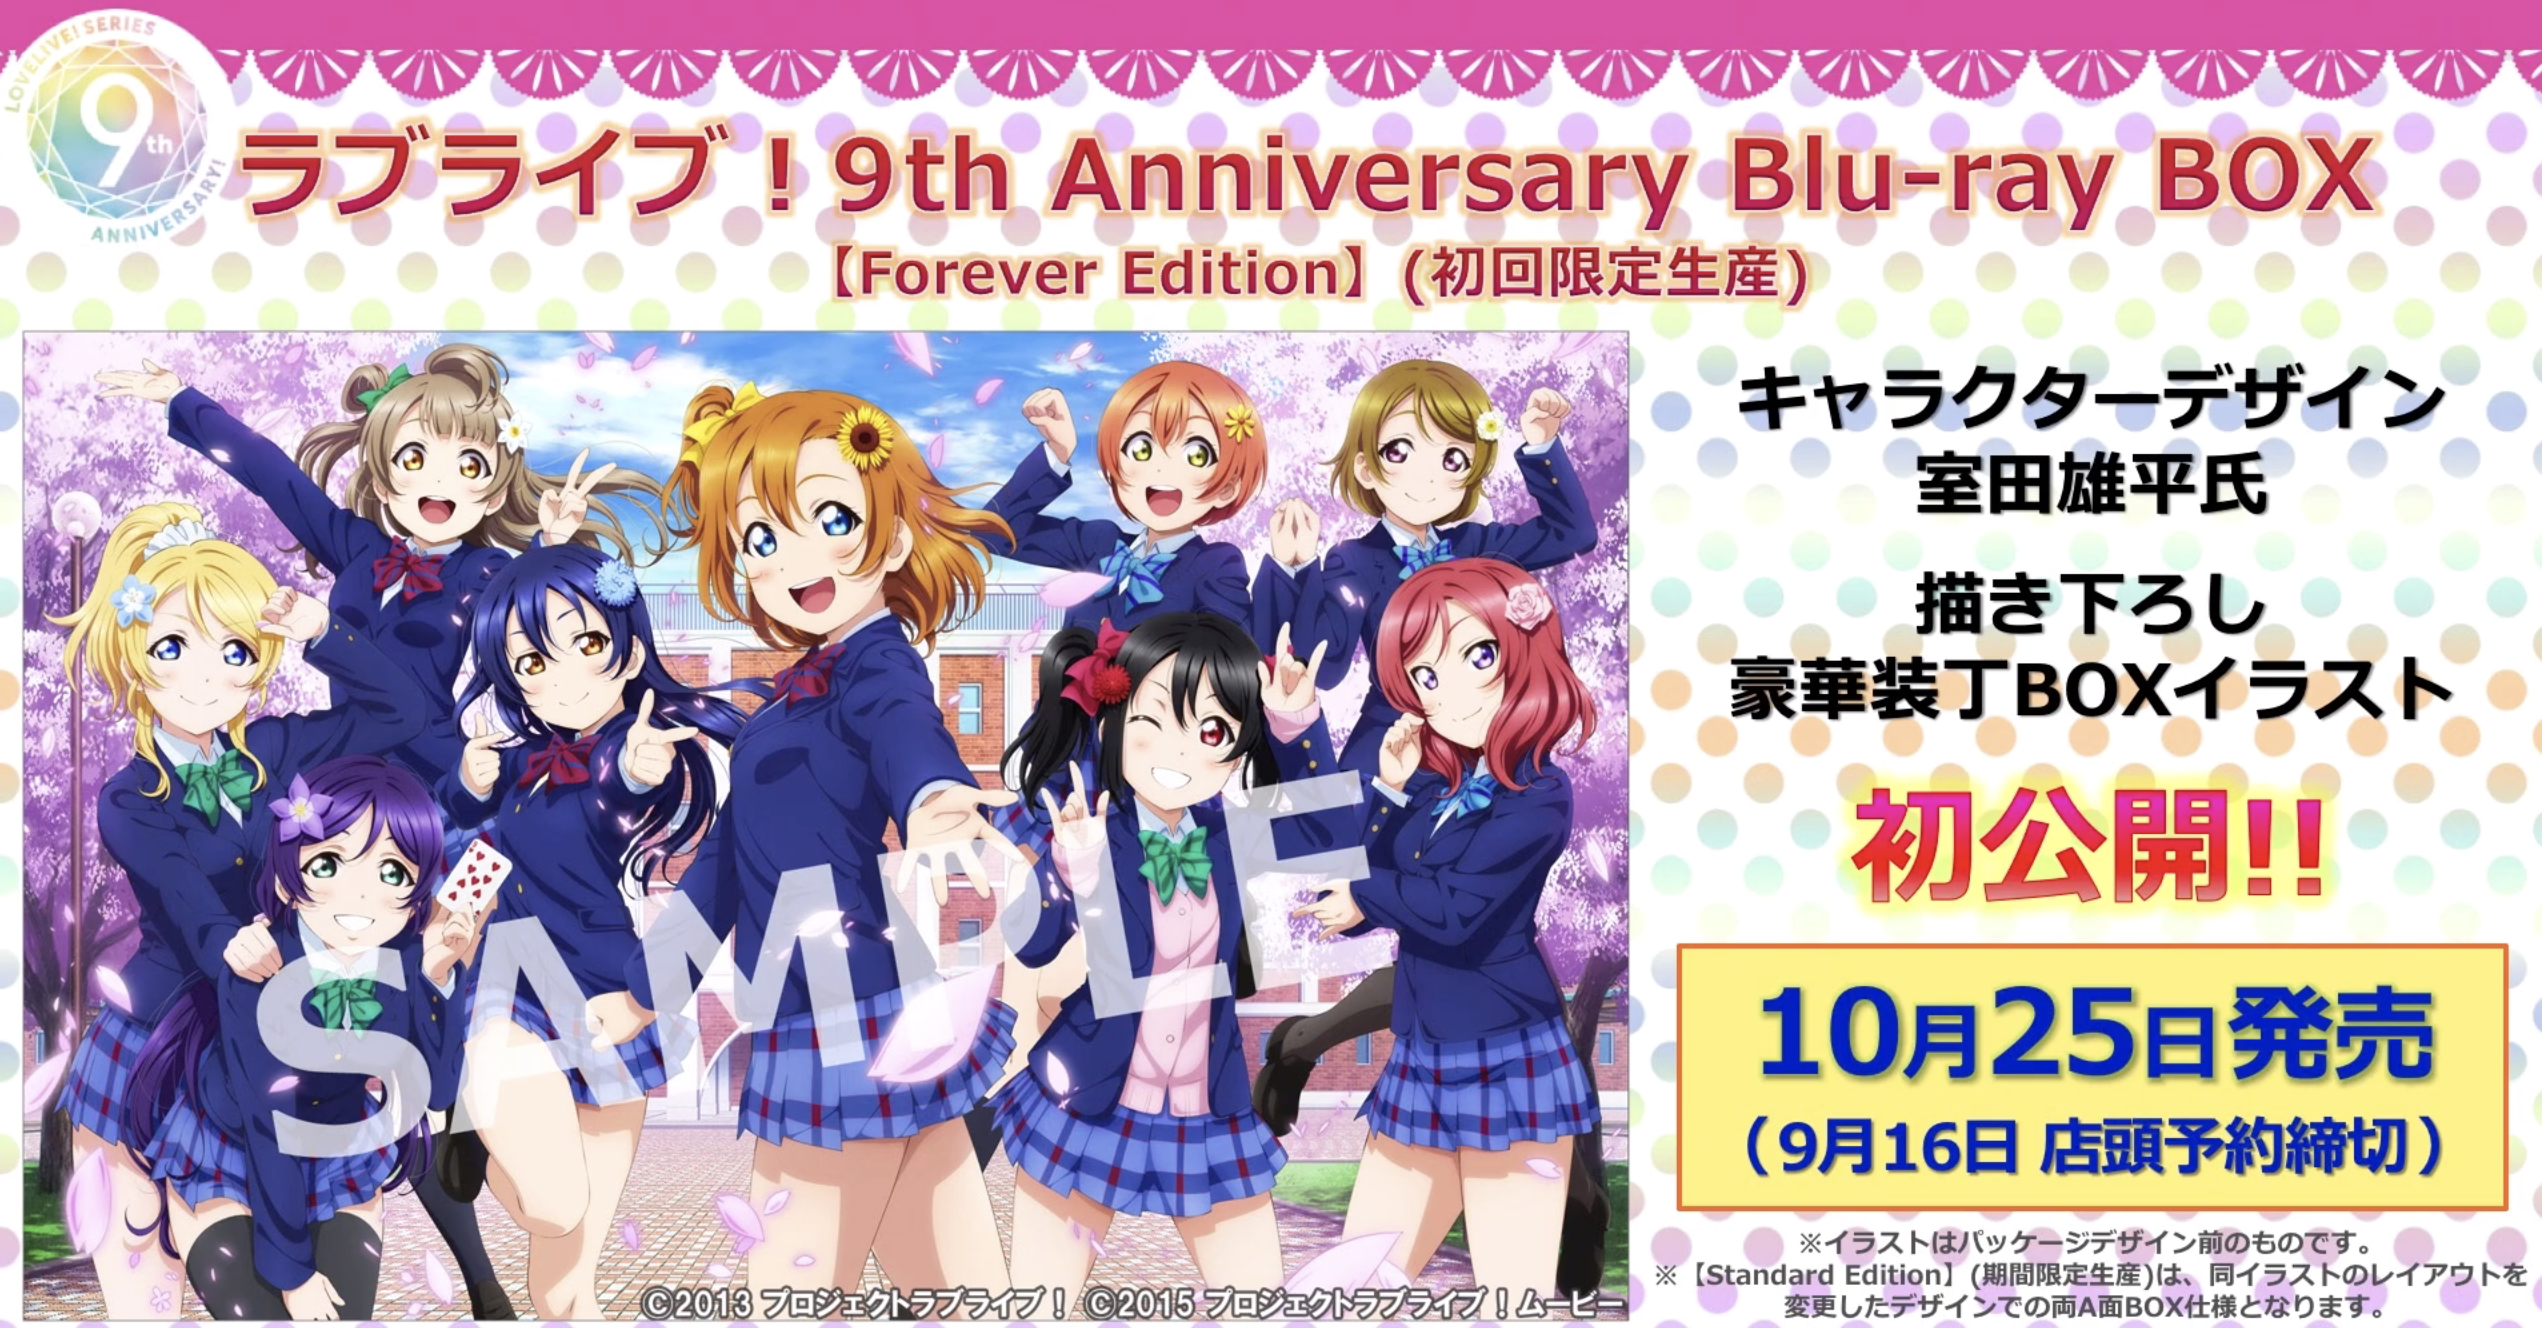 ラブライブ! 9th Anniversary Blu-ray BOX Fore… - ブルーレイ